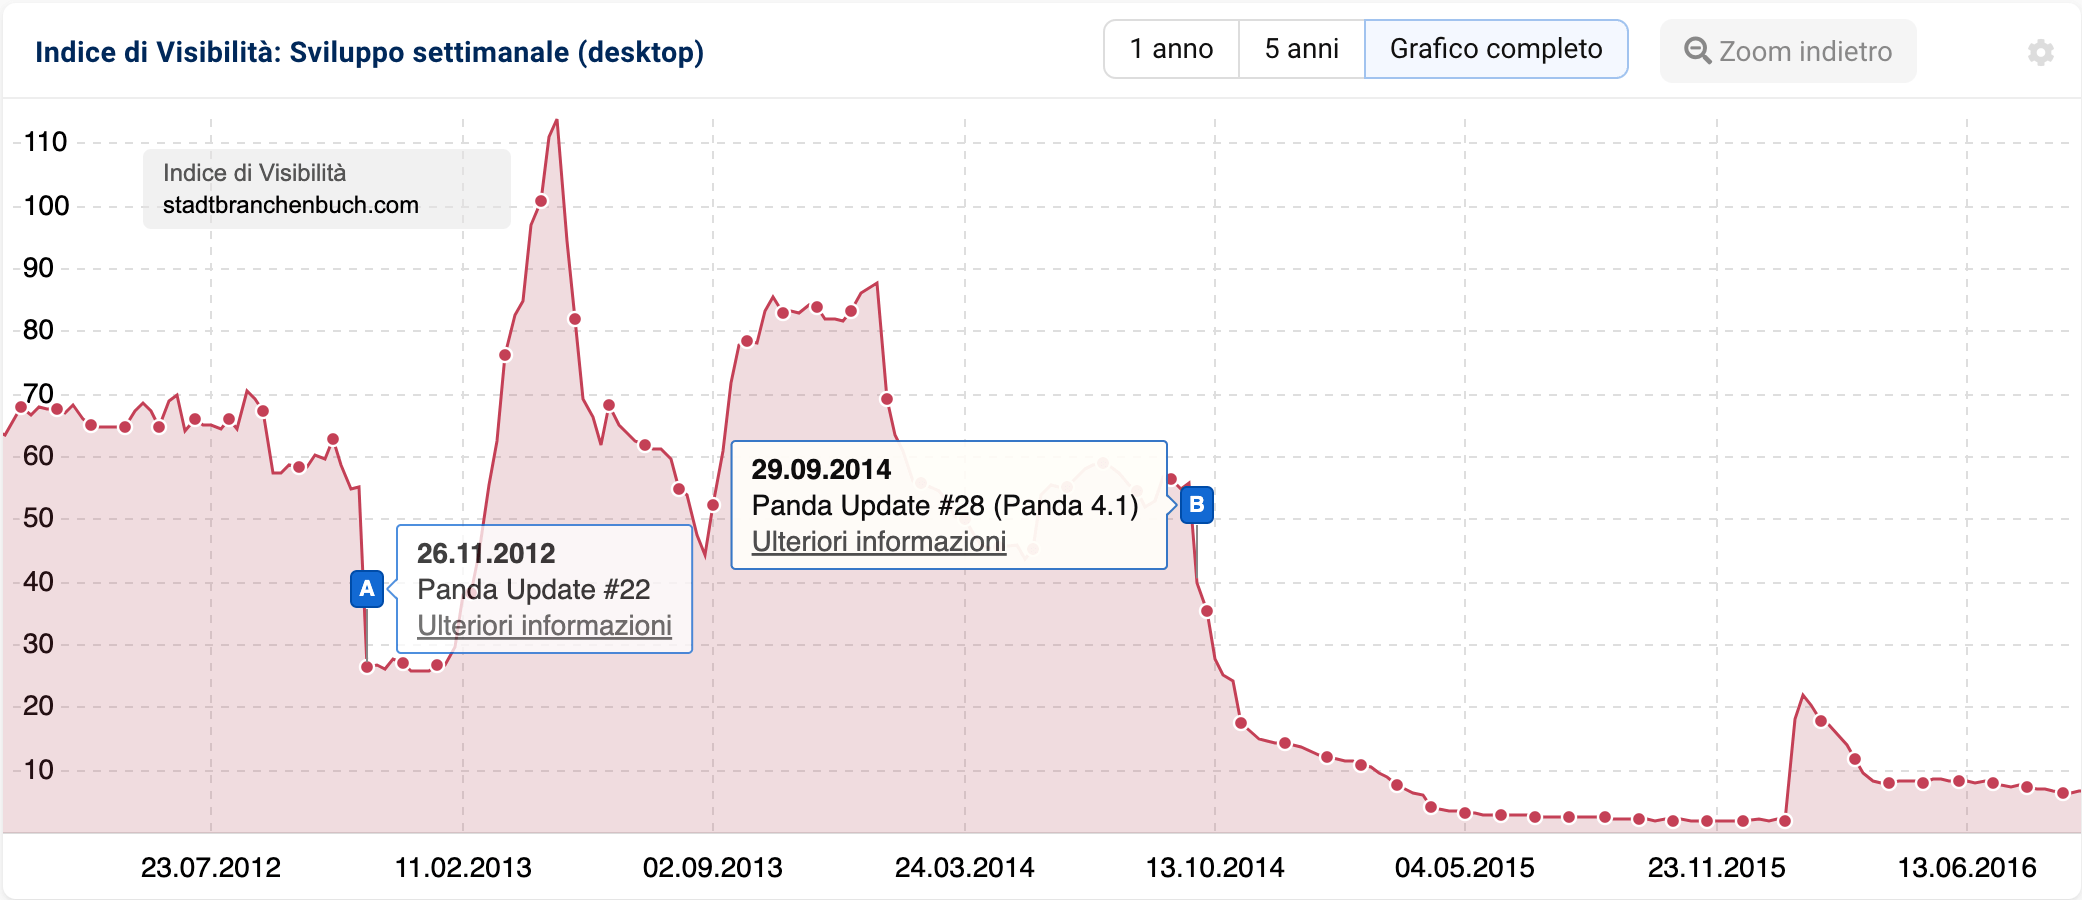 Indice di visibilità del dominio stadtbranchenbuch.com mostra gli effetti dell'aggiornamento Panda e i corrispondenti aggiornamenti dei dati basati sui pin eventi.